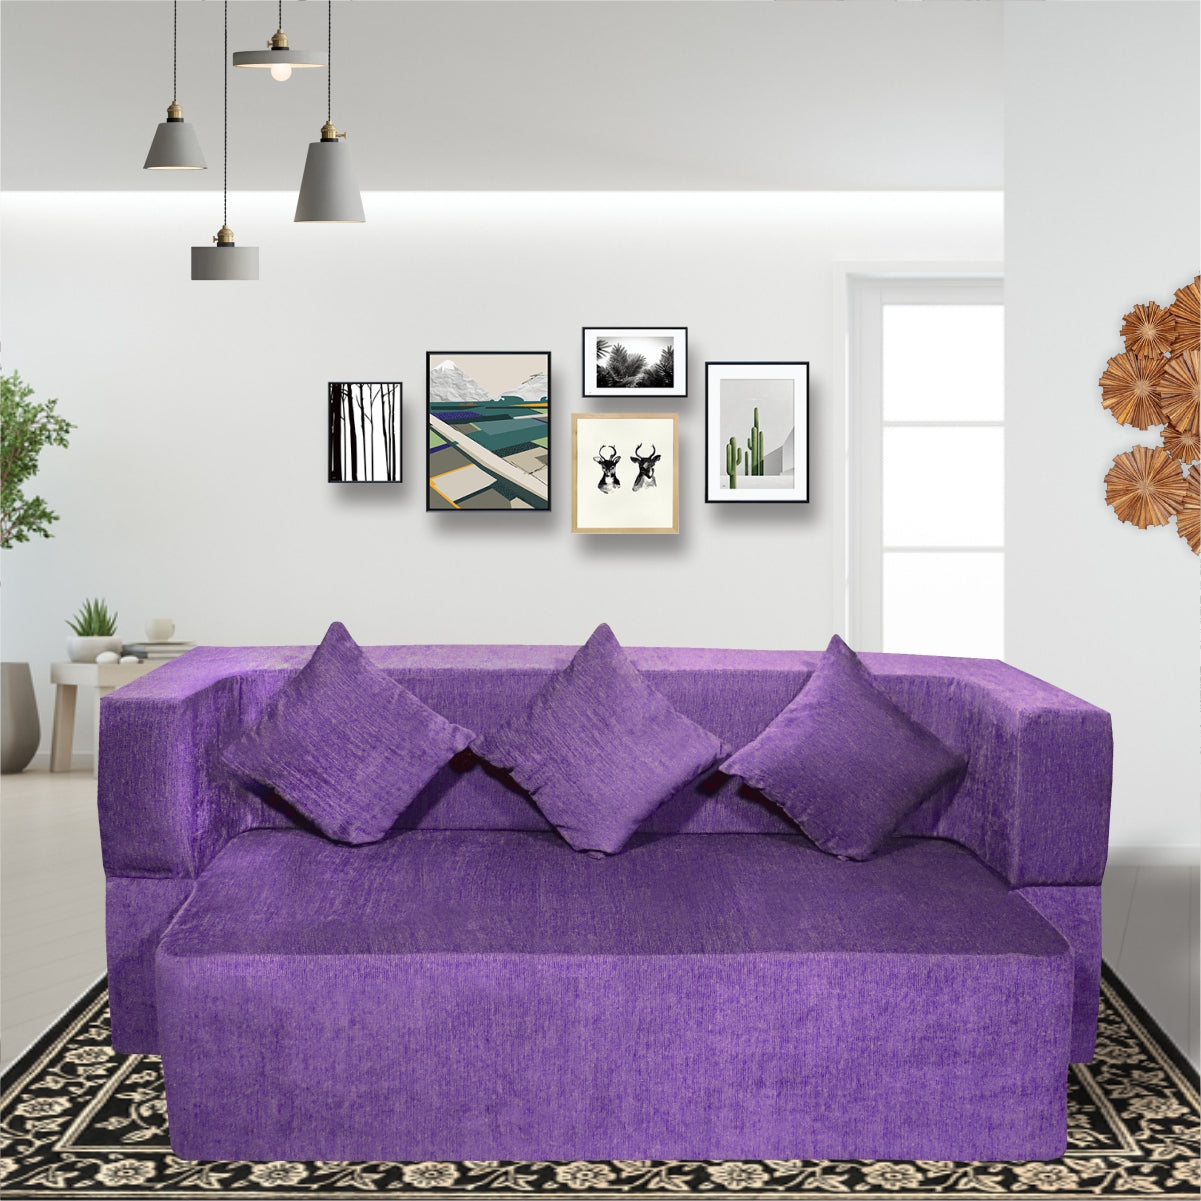 Cover of Purple Chenille Molfino Fabric (72"x44"x14") FlipperX Sofa Bed